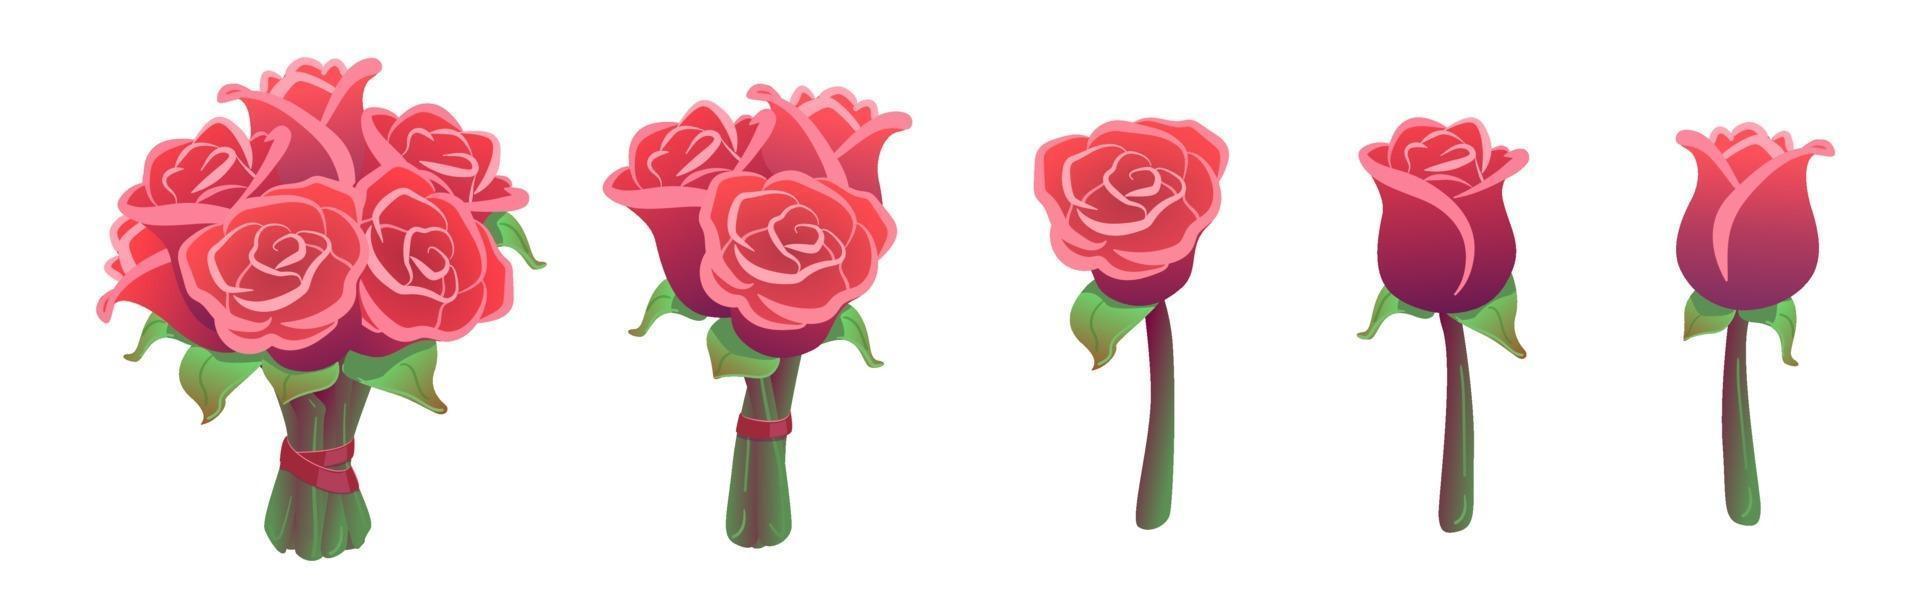 mooie set rode rozen boeketten geïsoleerd op een witte achtergrond. valentijn cadeau sticker pack. grote, kleine en enkele bloemen. bruiloft bloemencollectie. vector illustratie. liefde, romantiek ontwerpelementen